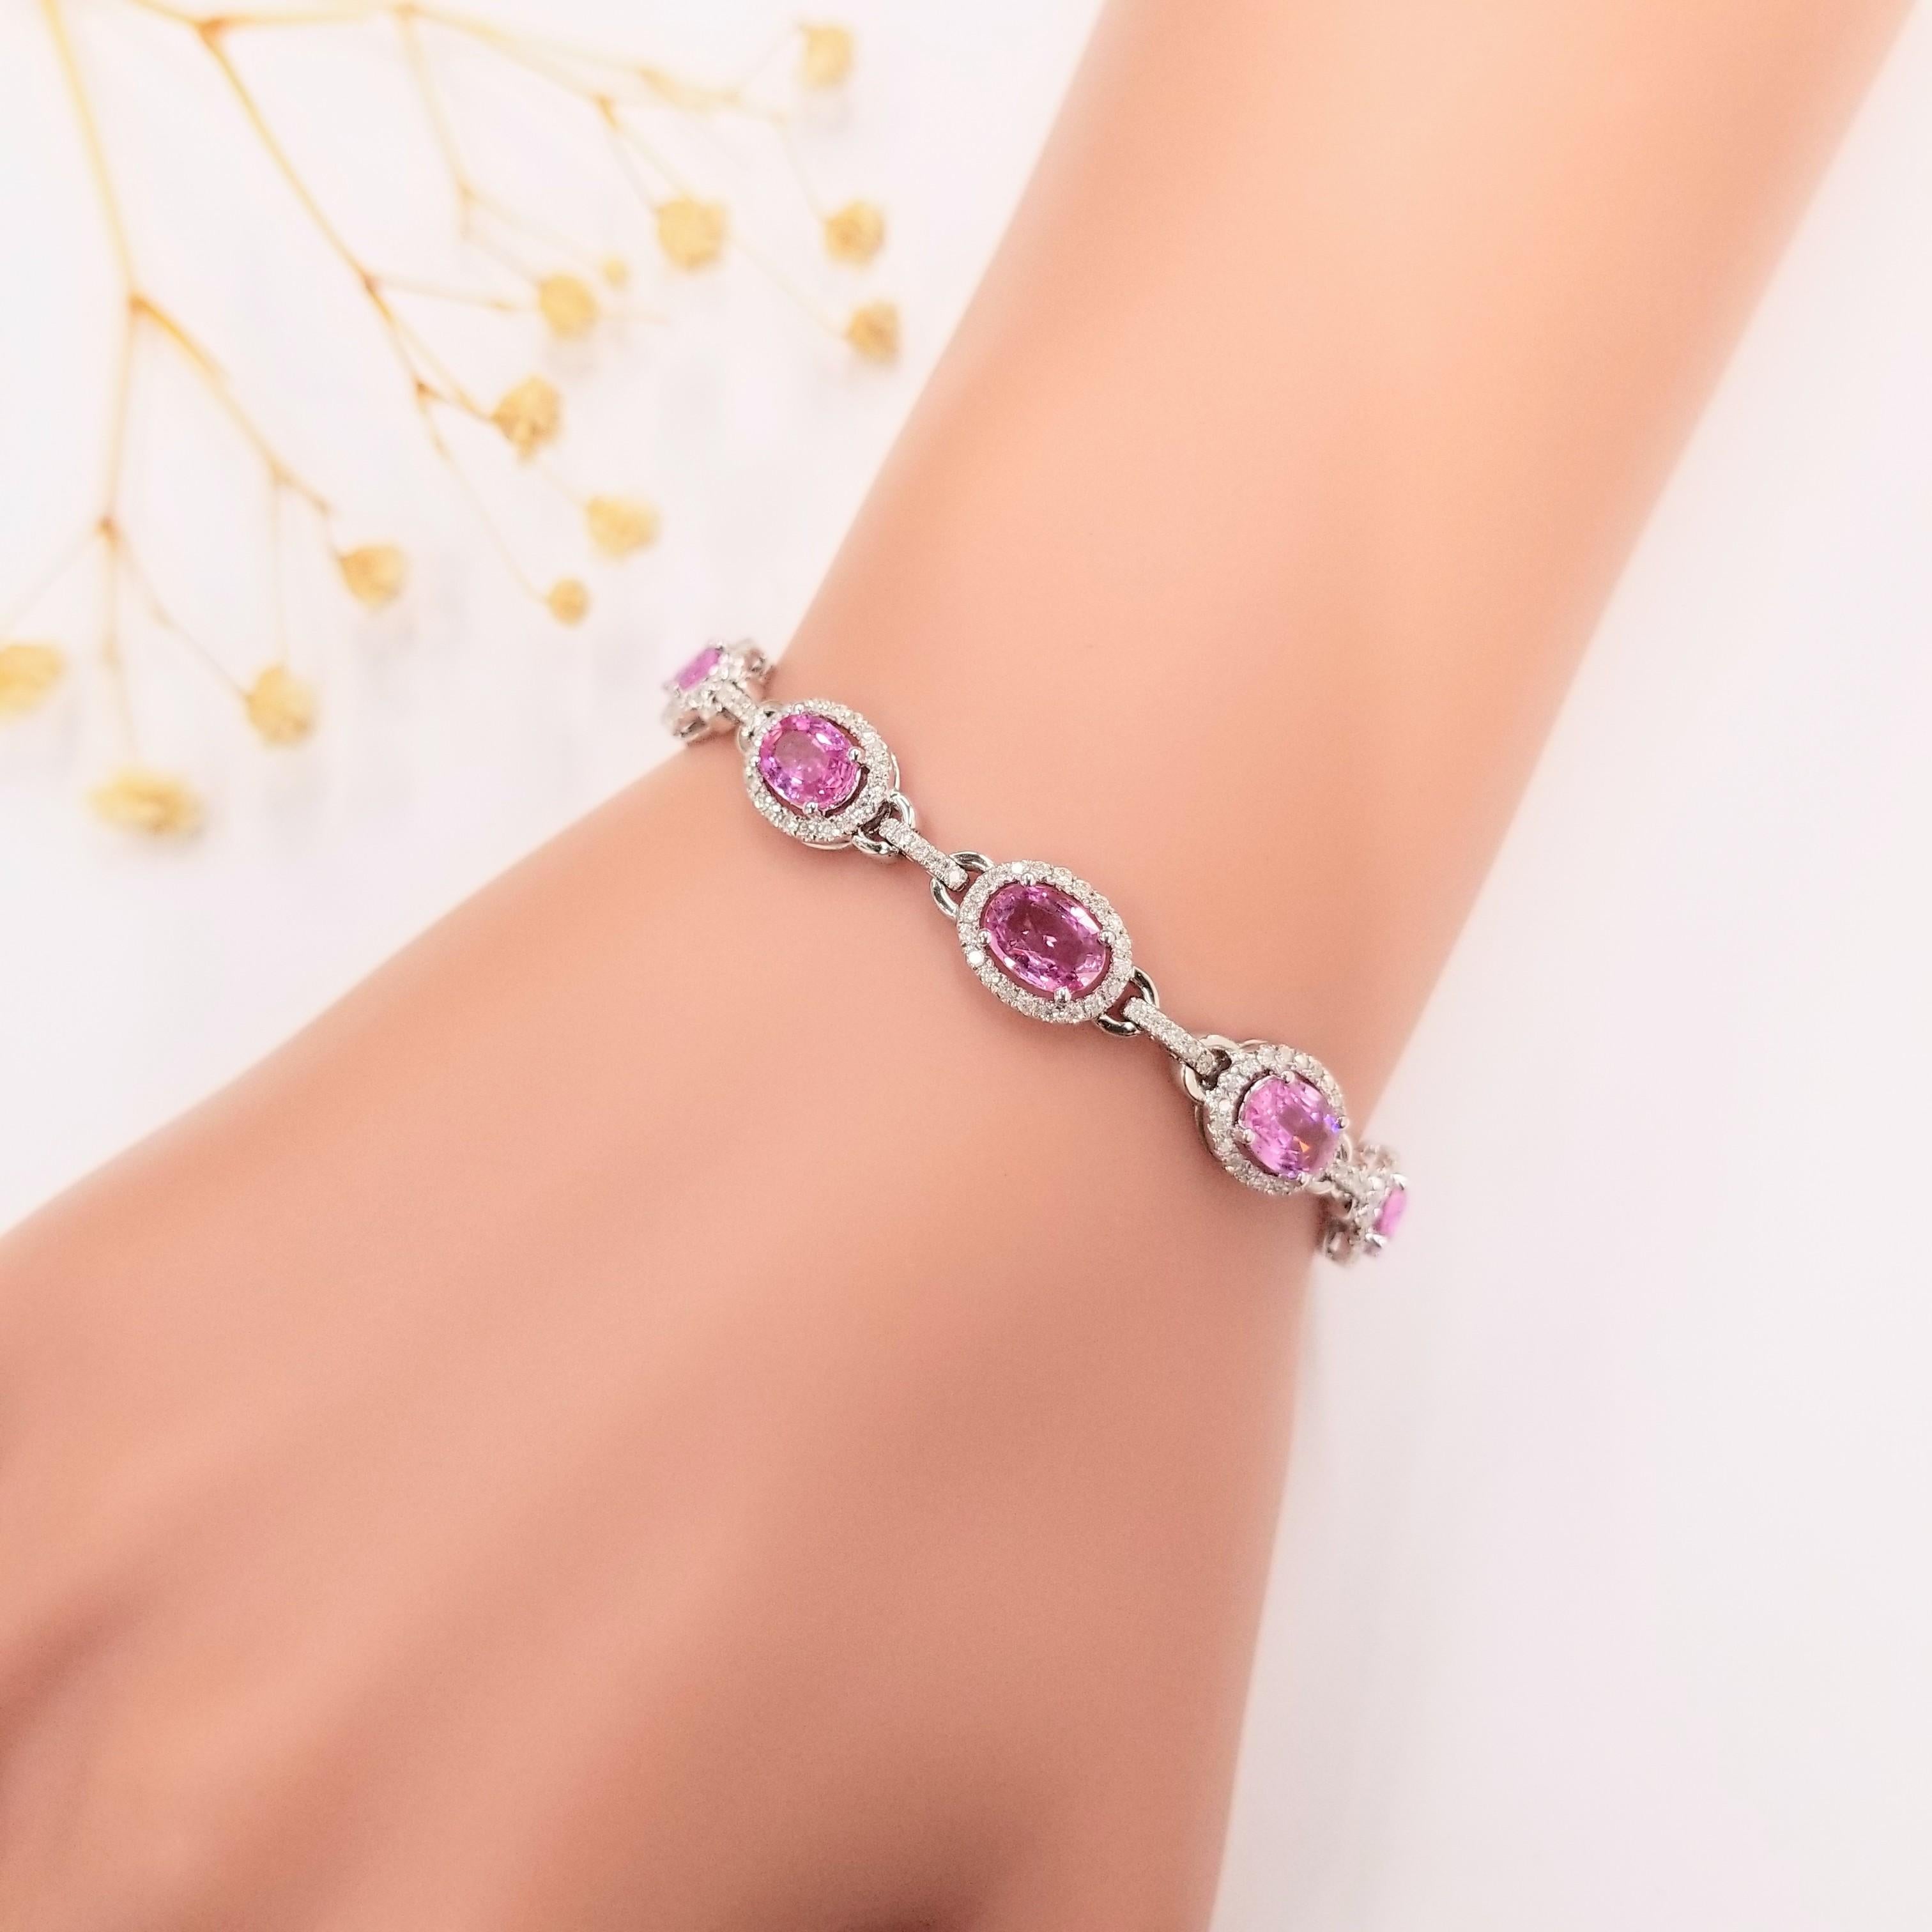 Voici le charmant bracelet certifié IGI de 4,24 carats de saphir rose et de diamant en or 18 carats. Ce bracelet exquis présente des saphirs roses de forme ovale, d'une captivante couleur rose violacé intense. Chaque saphir rose, d'un poids